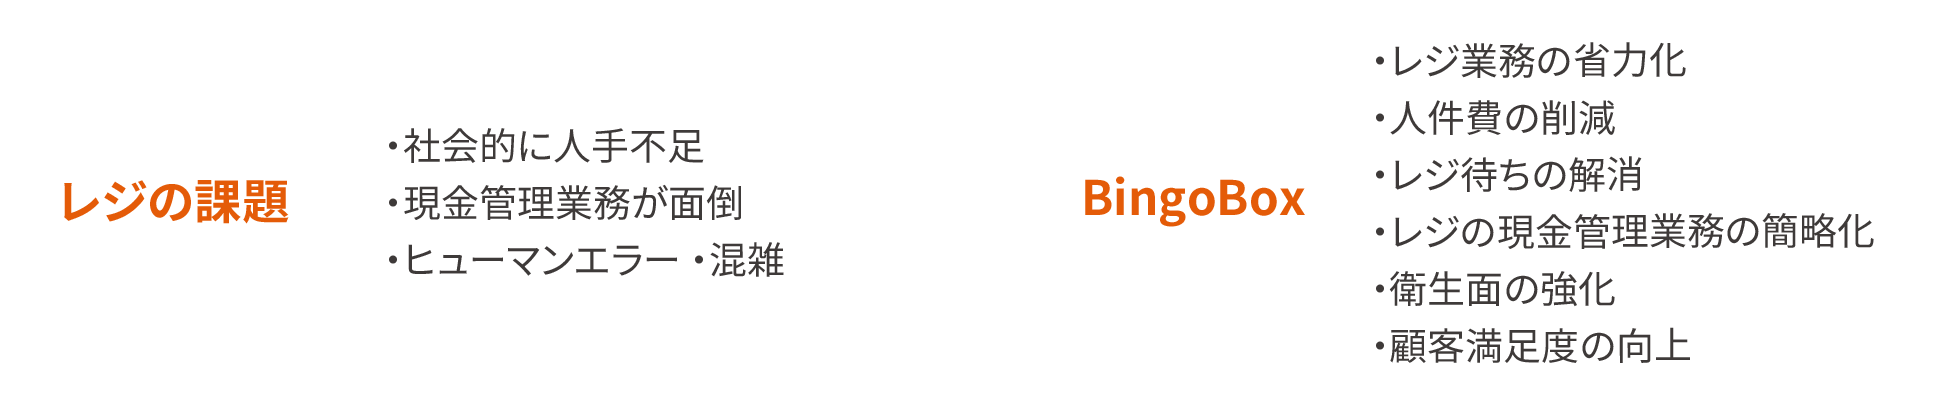 レジの課題、BingoBox